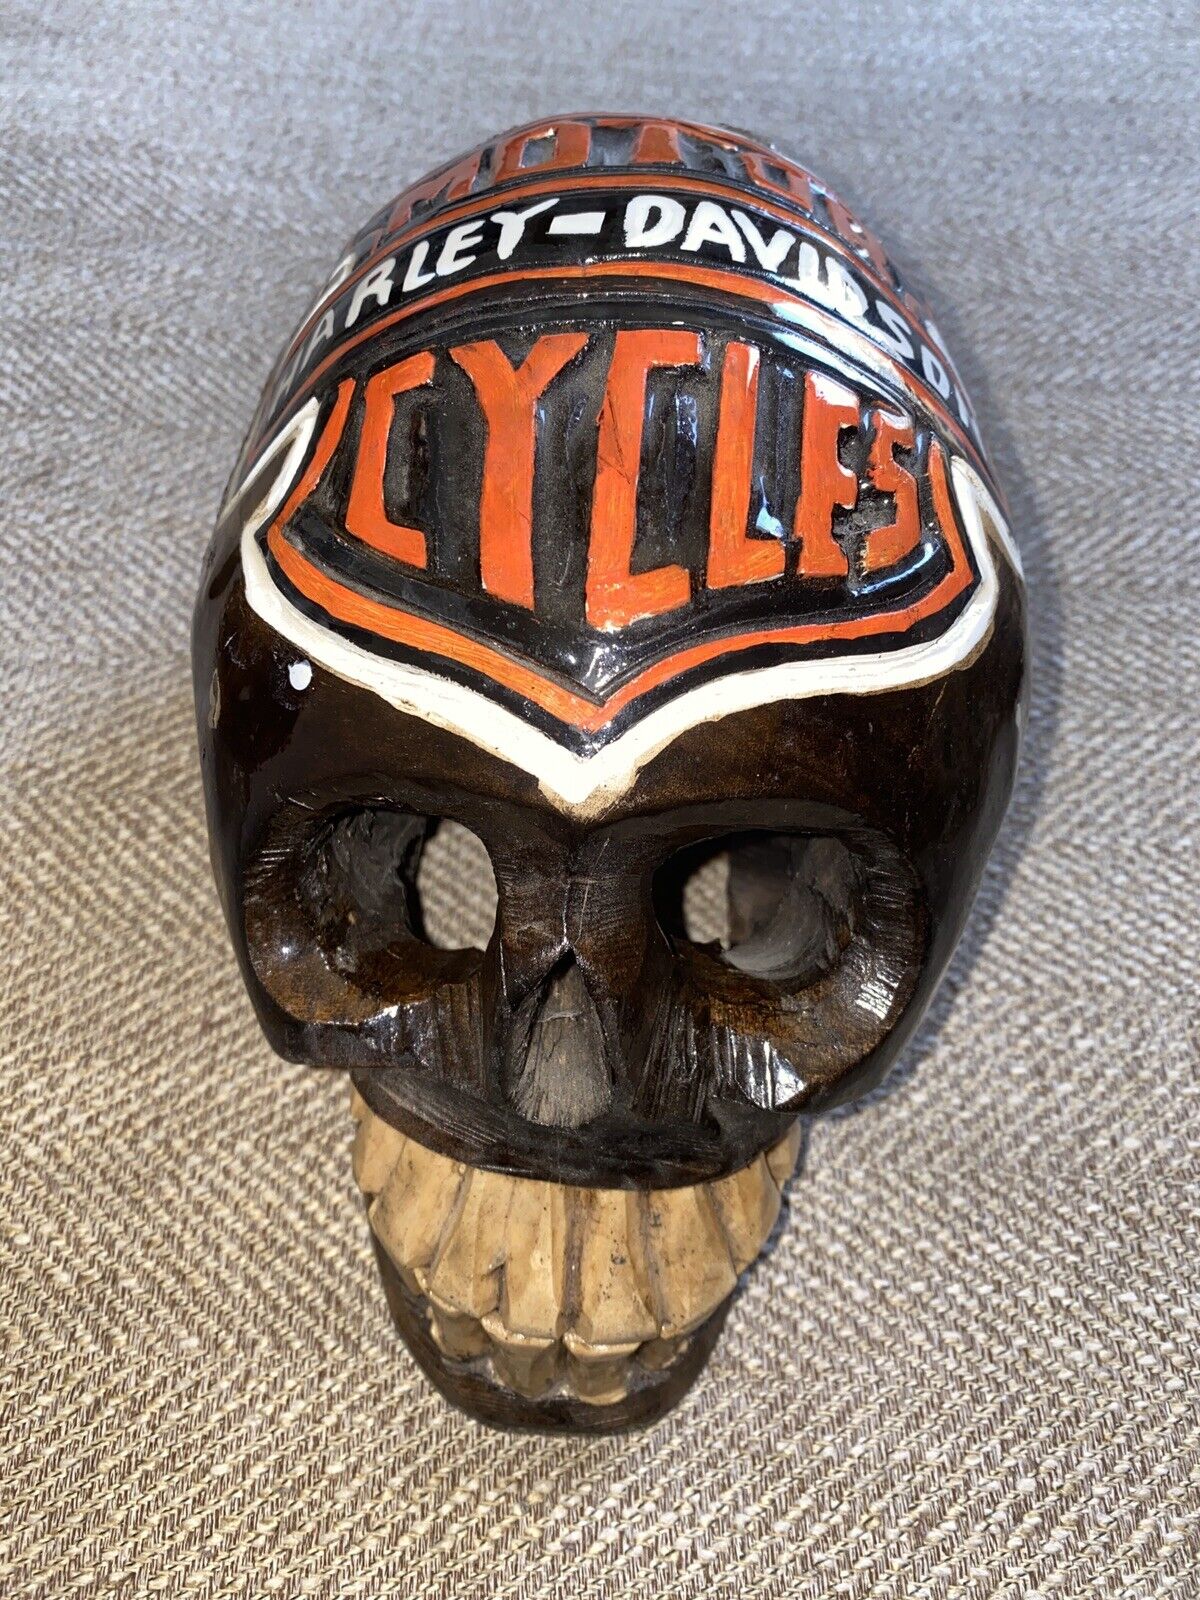 Harley Davidson Carved Skull Rare Looks Cool Wood Carved